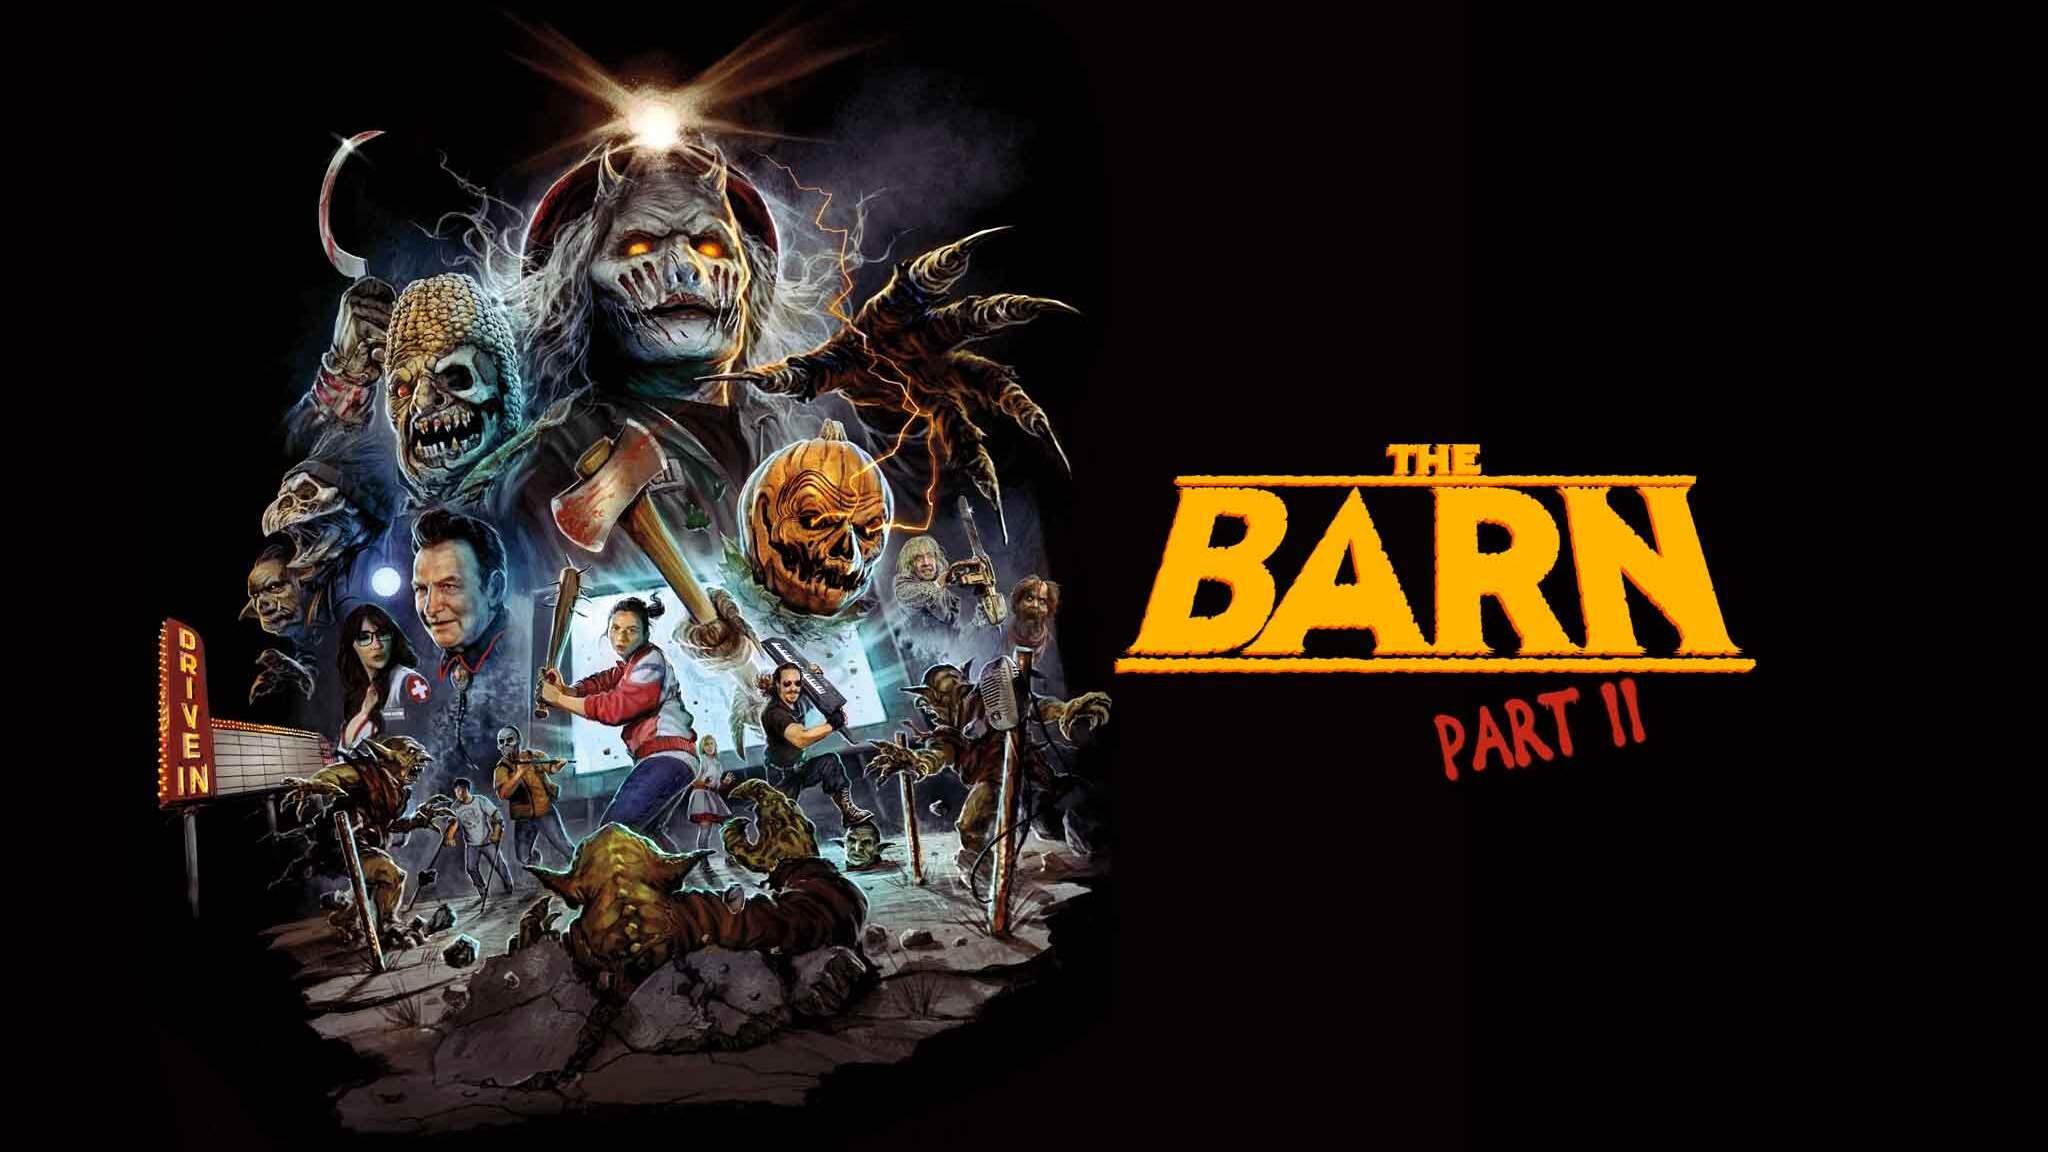 The Barn parte II se estrena en Planet Horror 12 días después su paso por Sitges